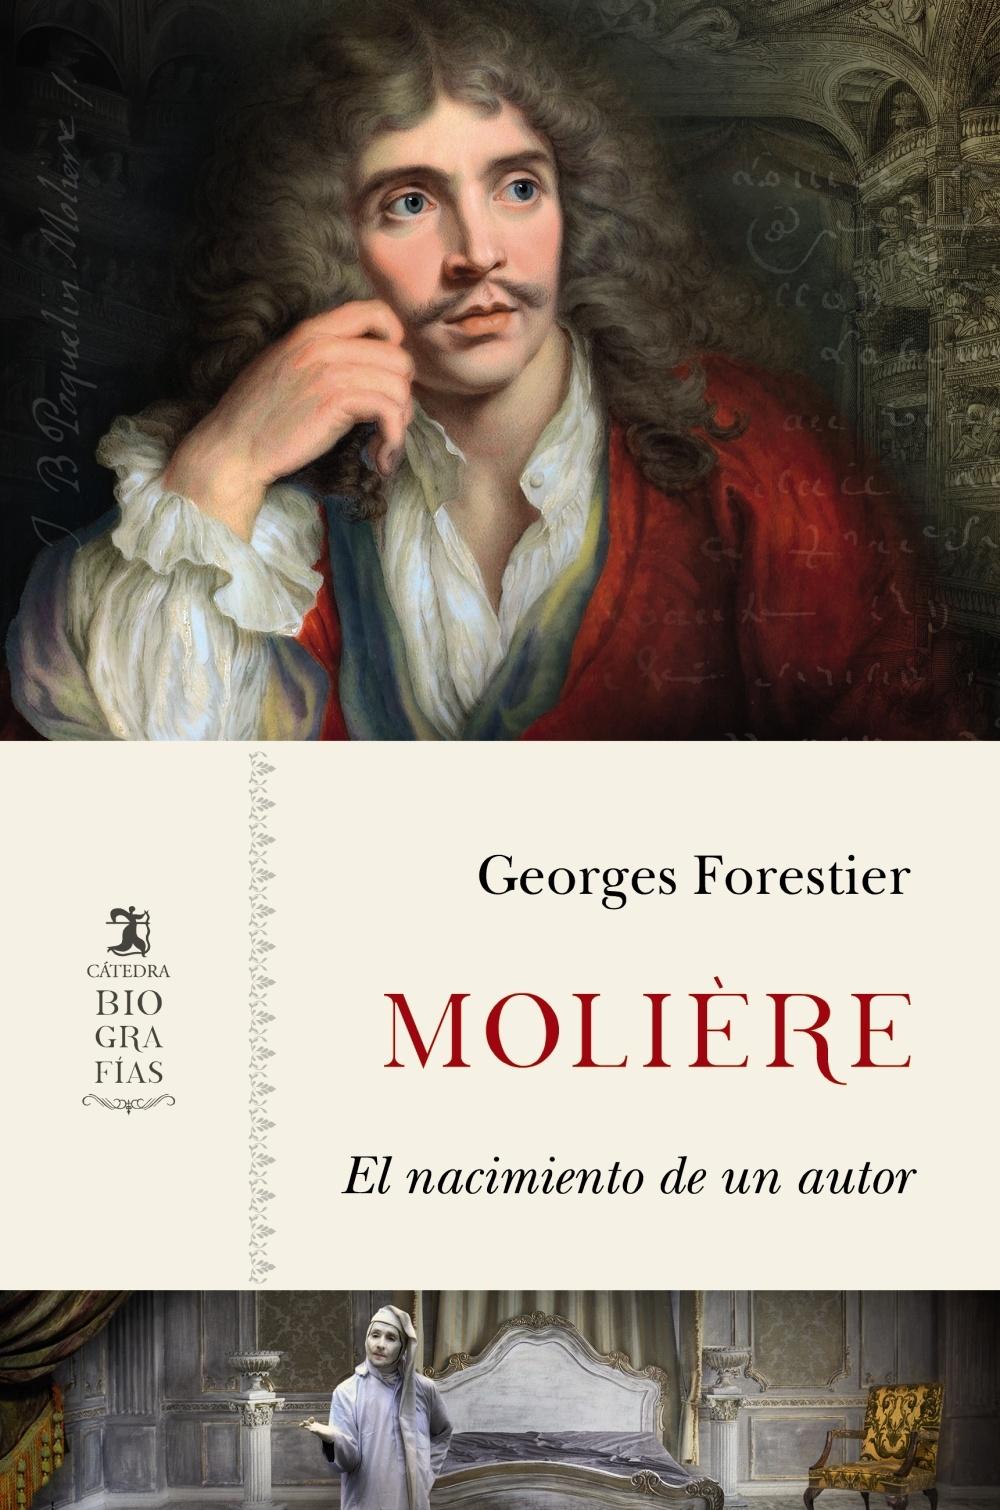 Molière "El nacimiento de un autor". 